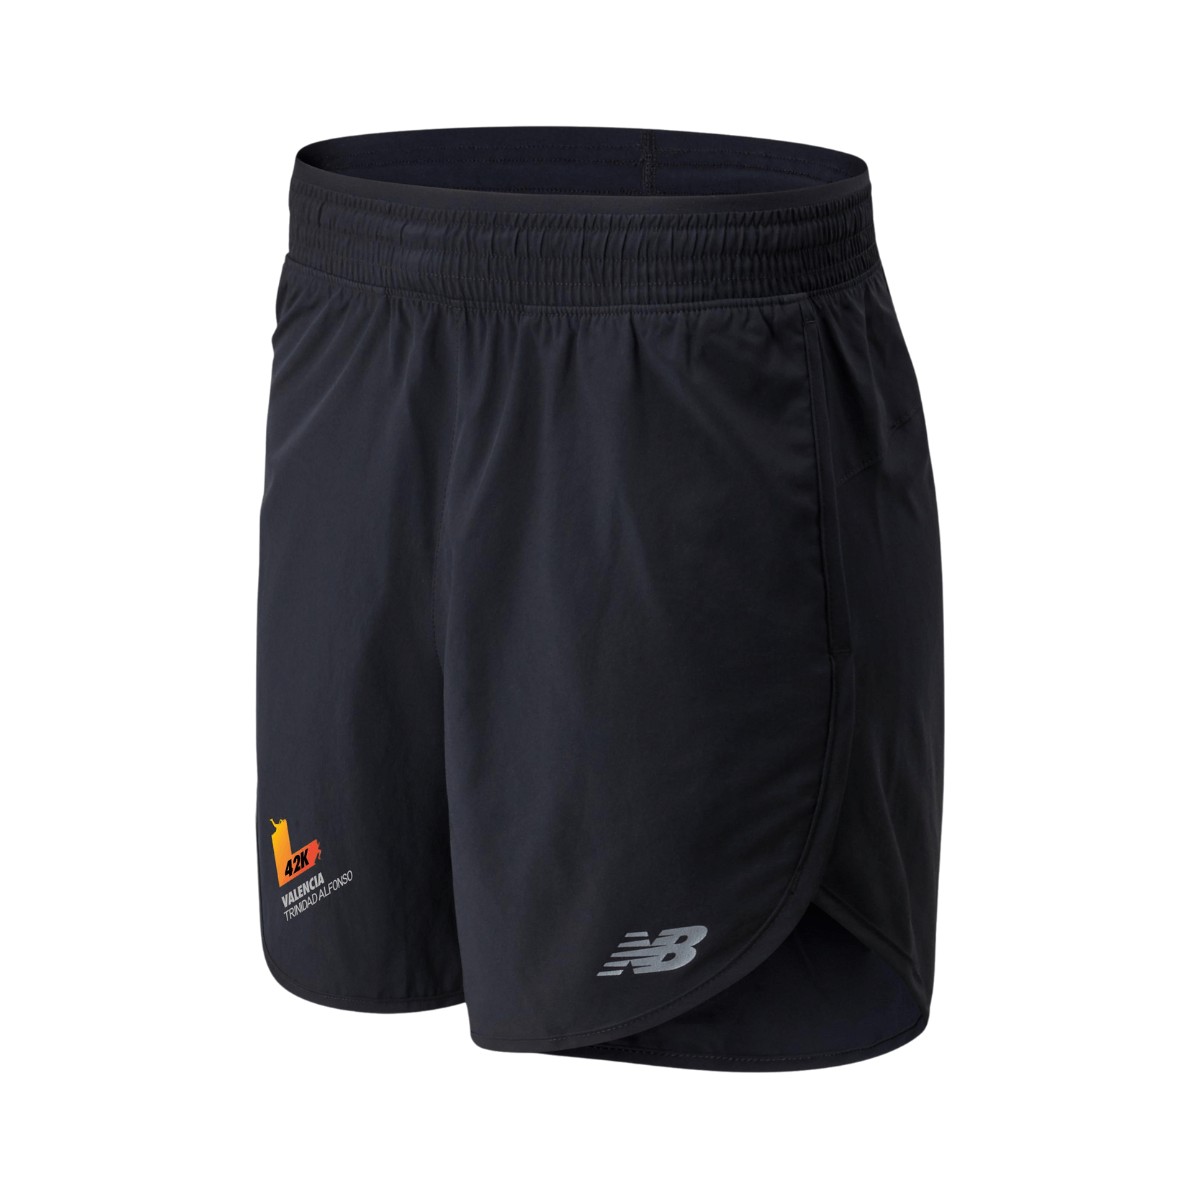 Venda Shorts New Balance Accelerate 2,5 polegadas Melhor Preço